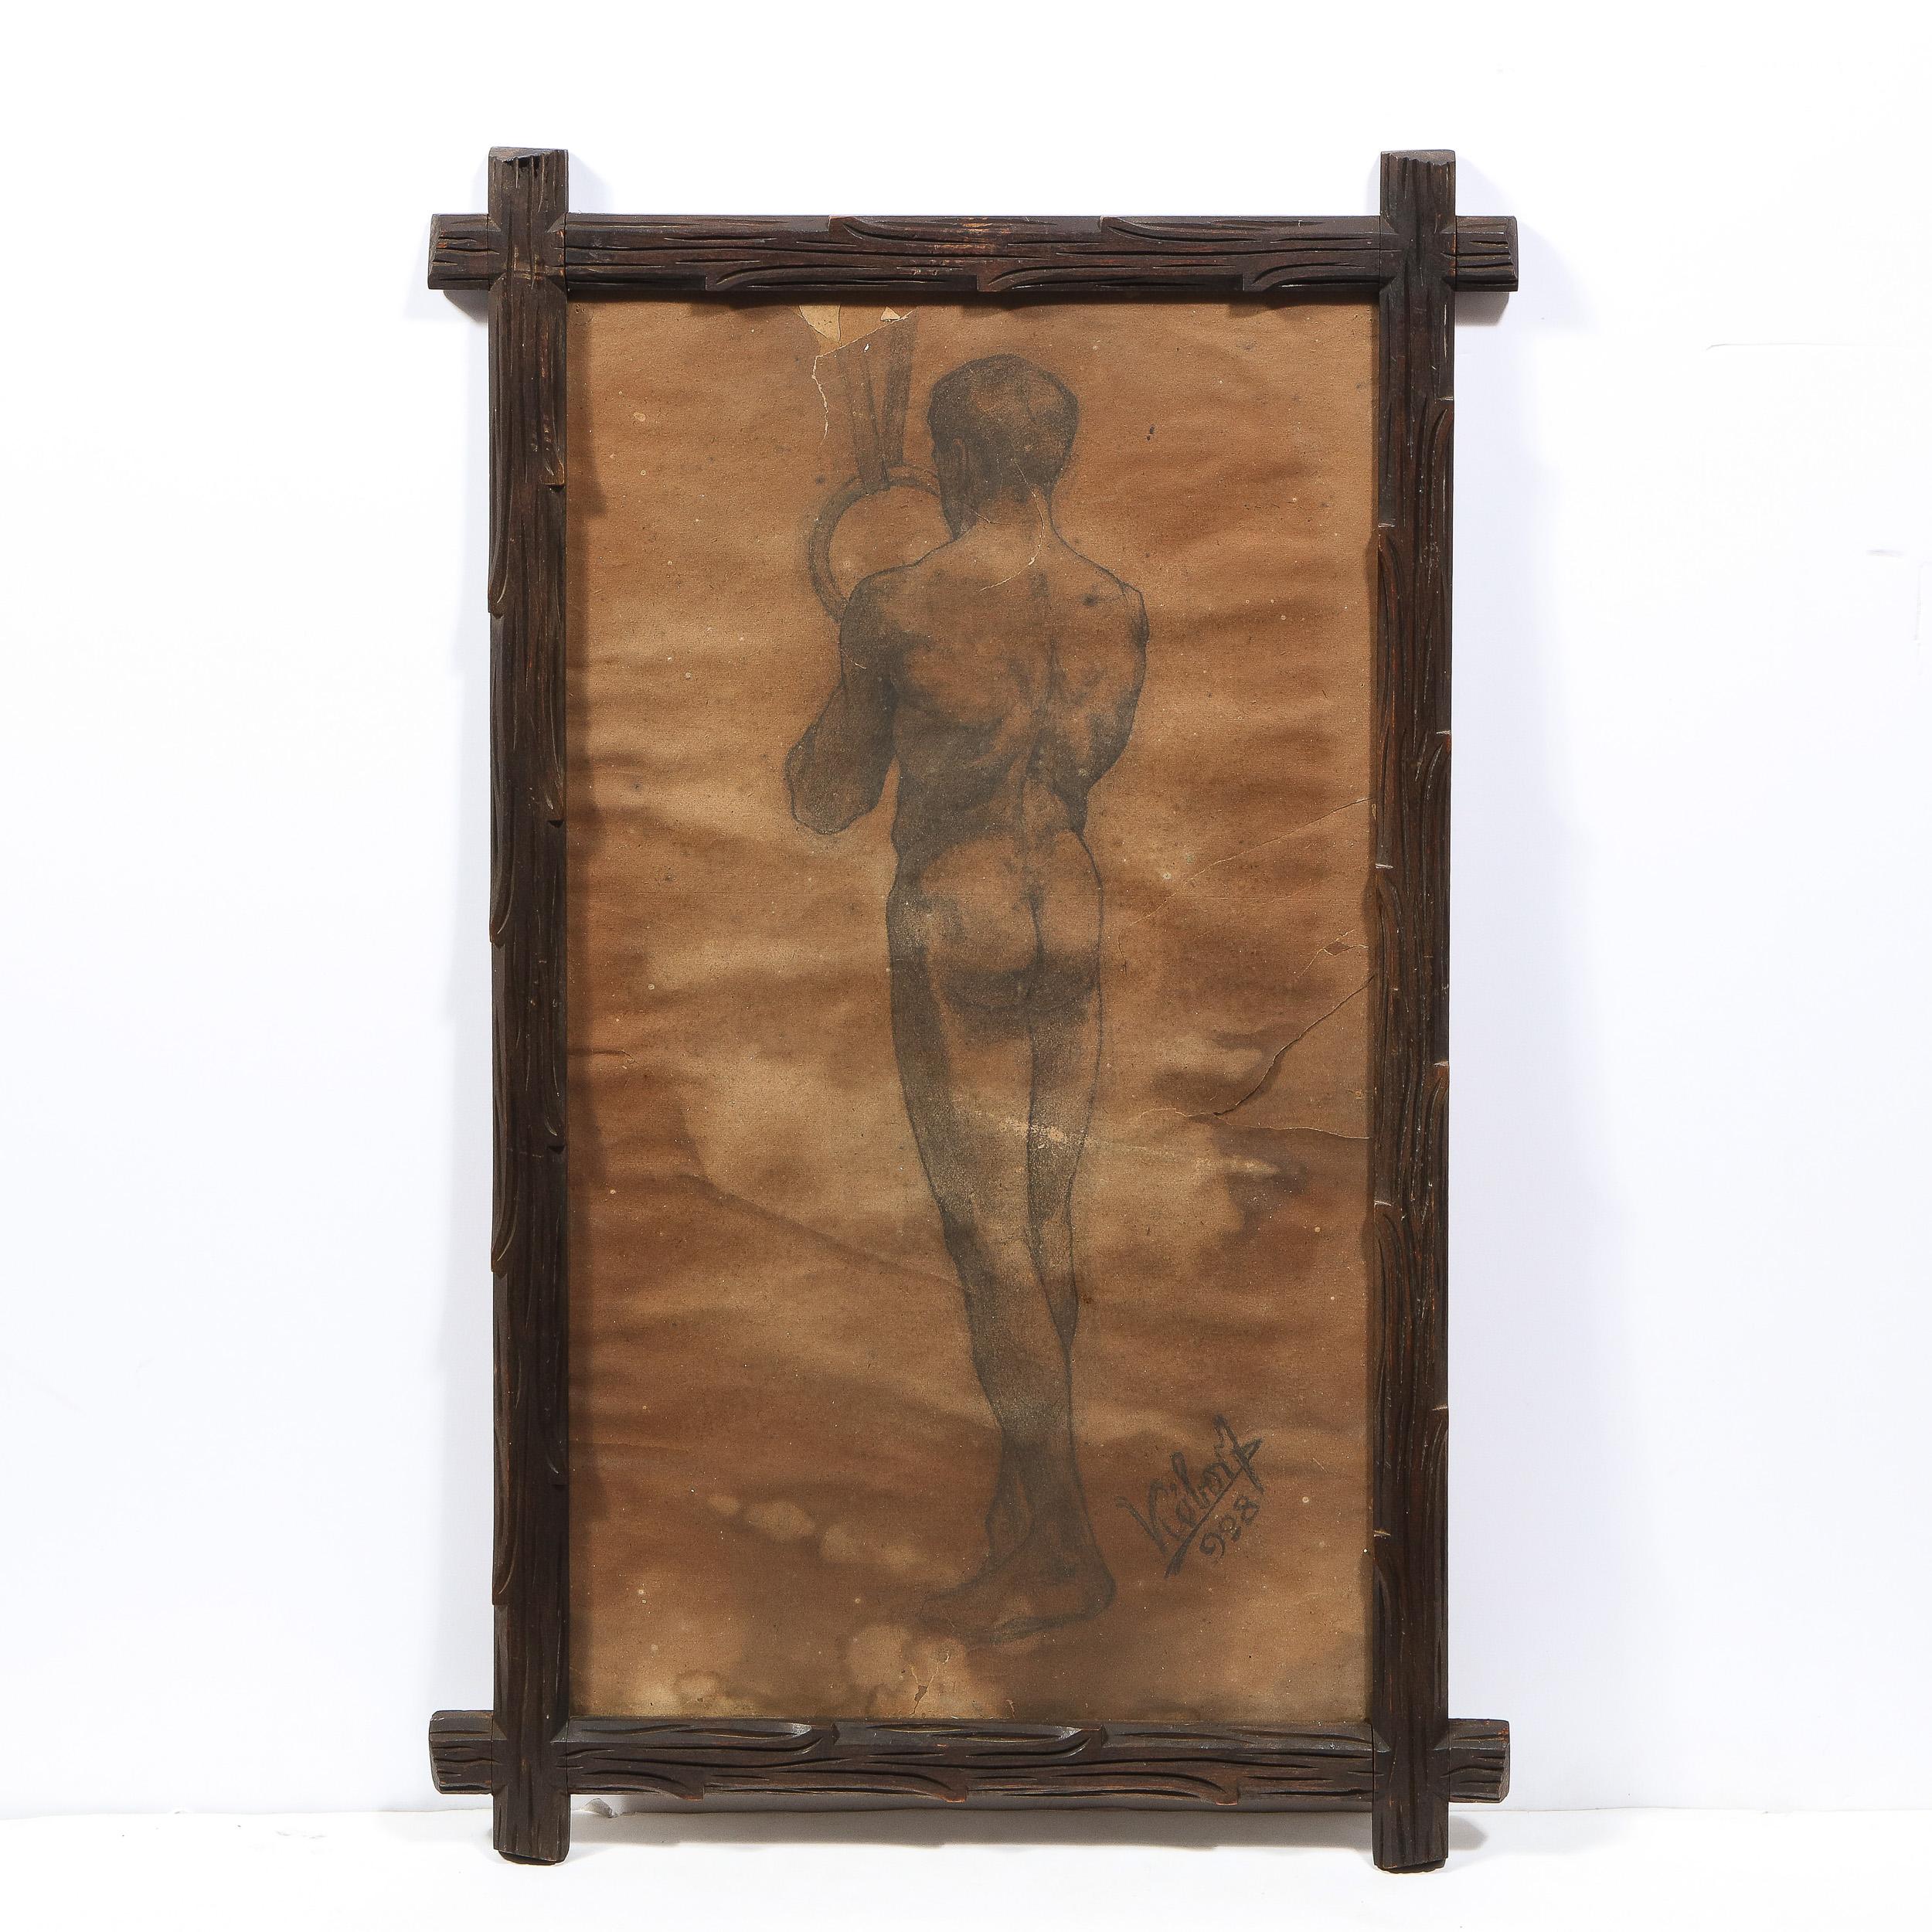 Untitled Nude Male Diptych, Charcoal/ Graphite on Parchment by Henrik Kóbor  - Art Nouveau Art by Henrik Kobor